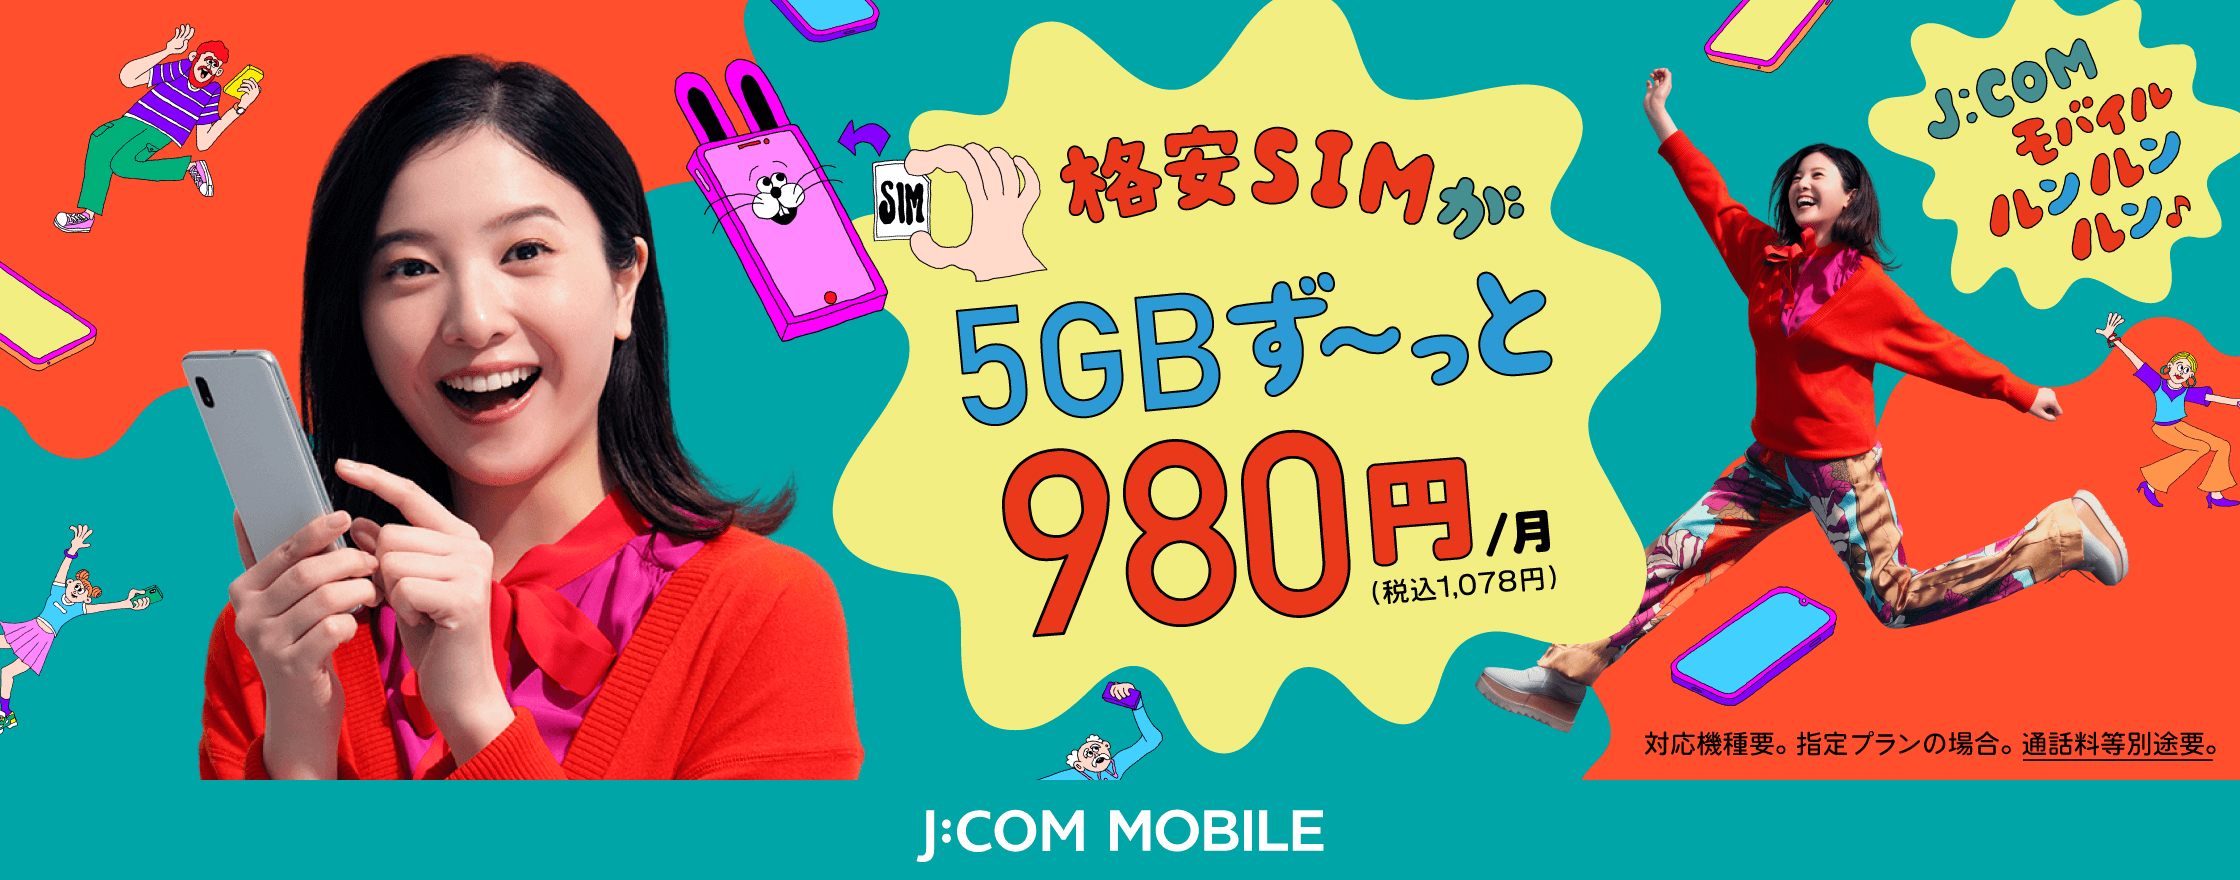 格安SIM 5GB ずーっと980円